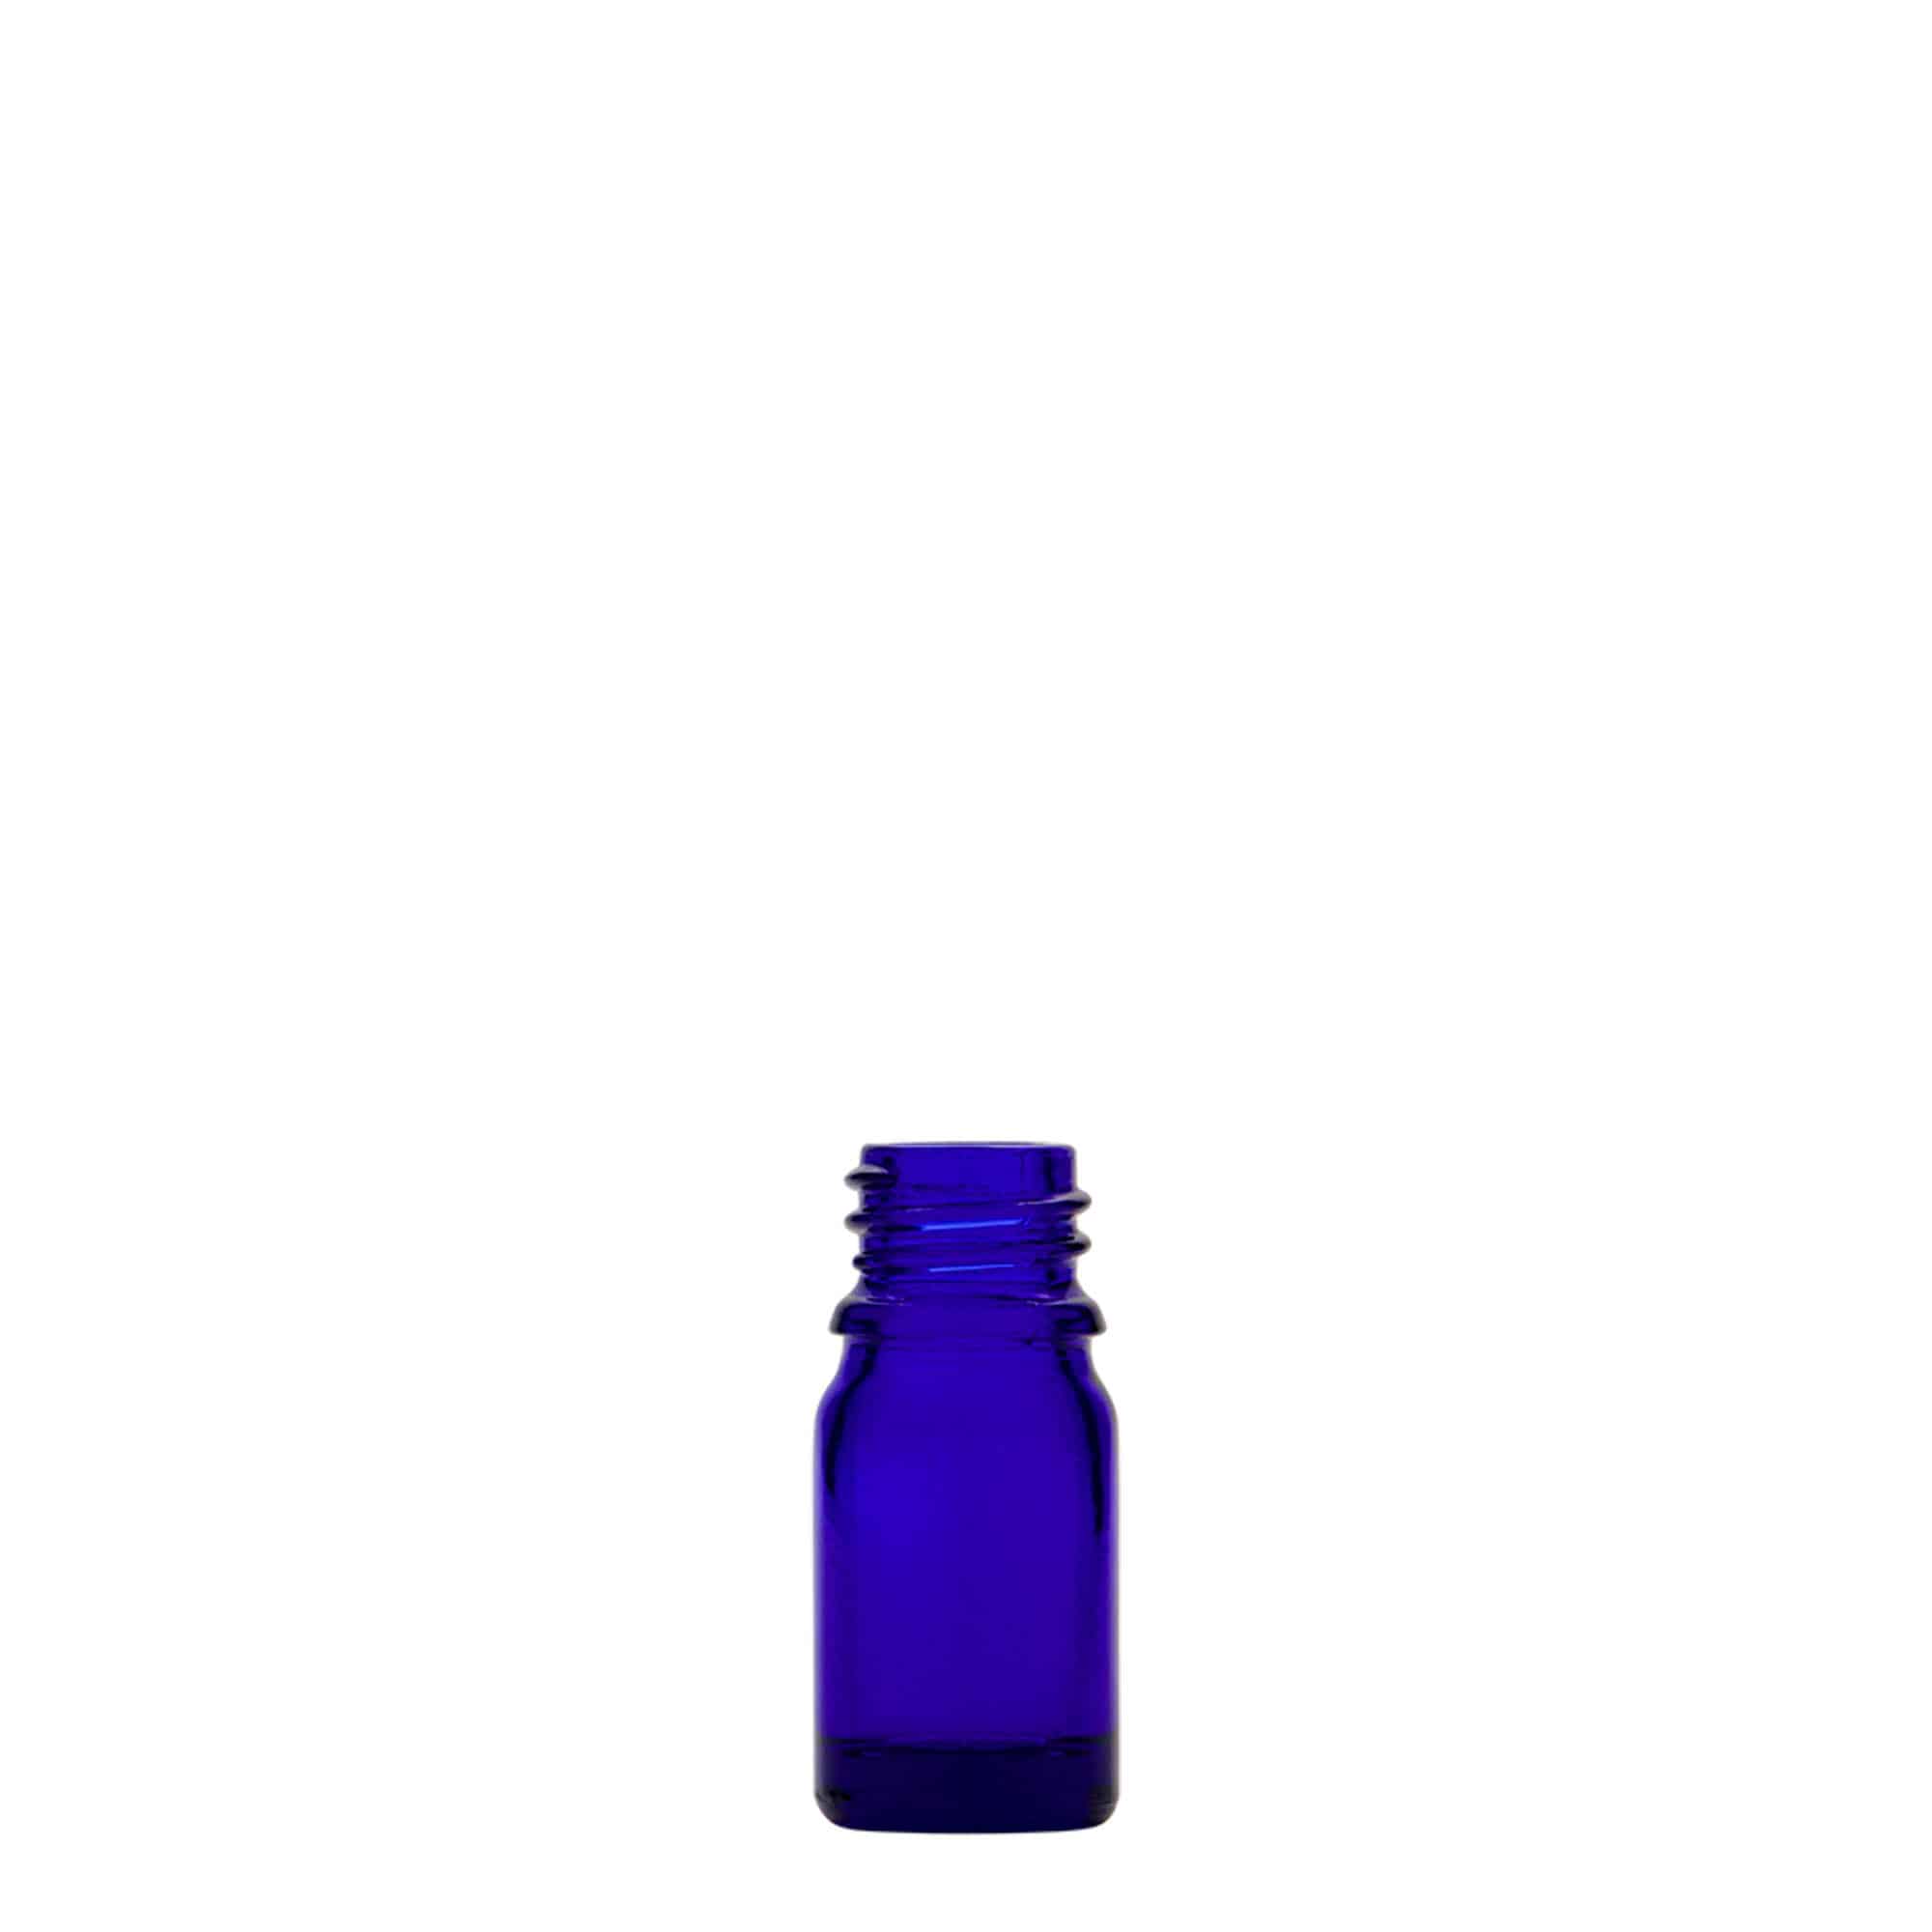 Lékovka 5 ml, sklo, královská modř, ústí: DIN 18